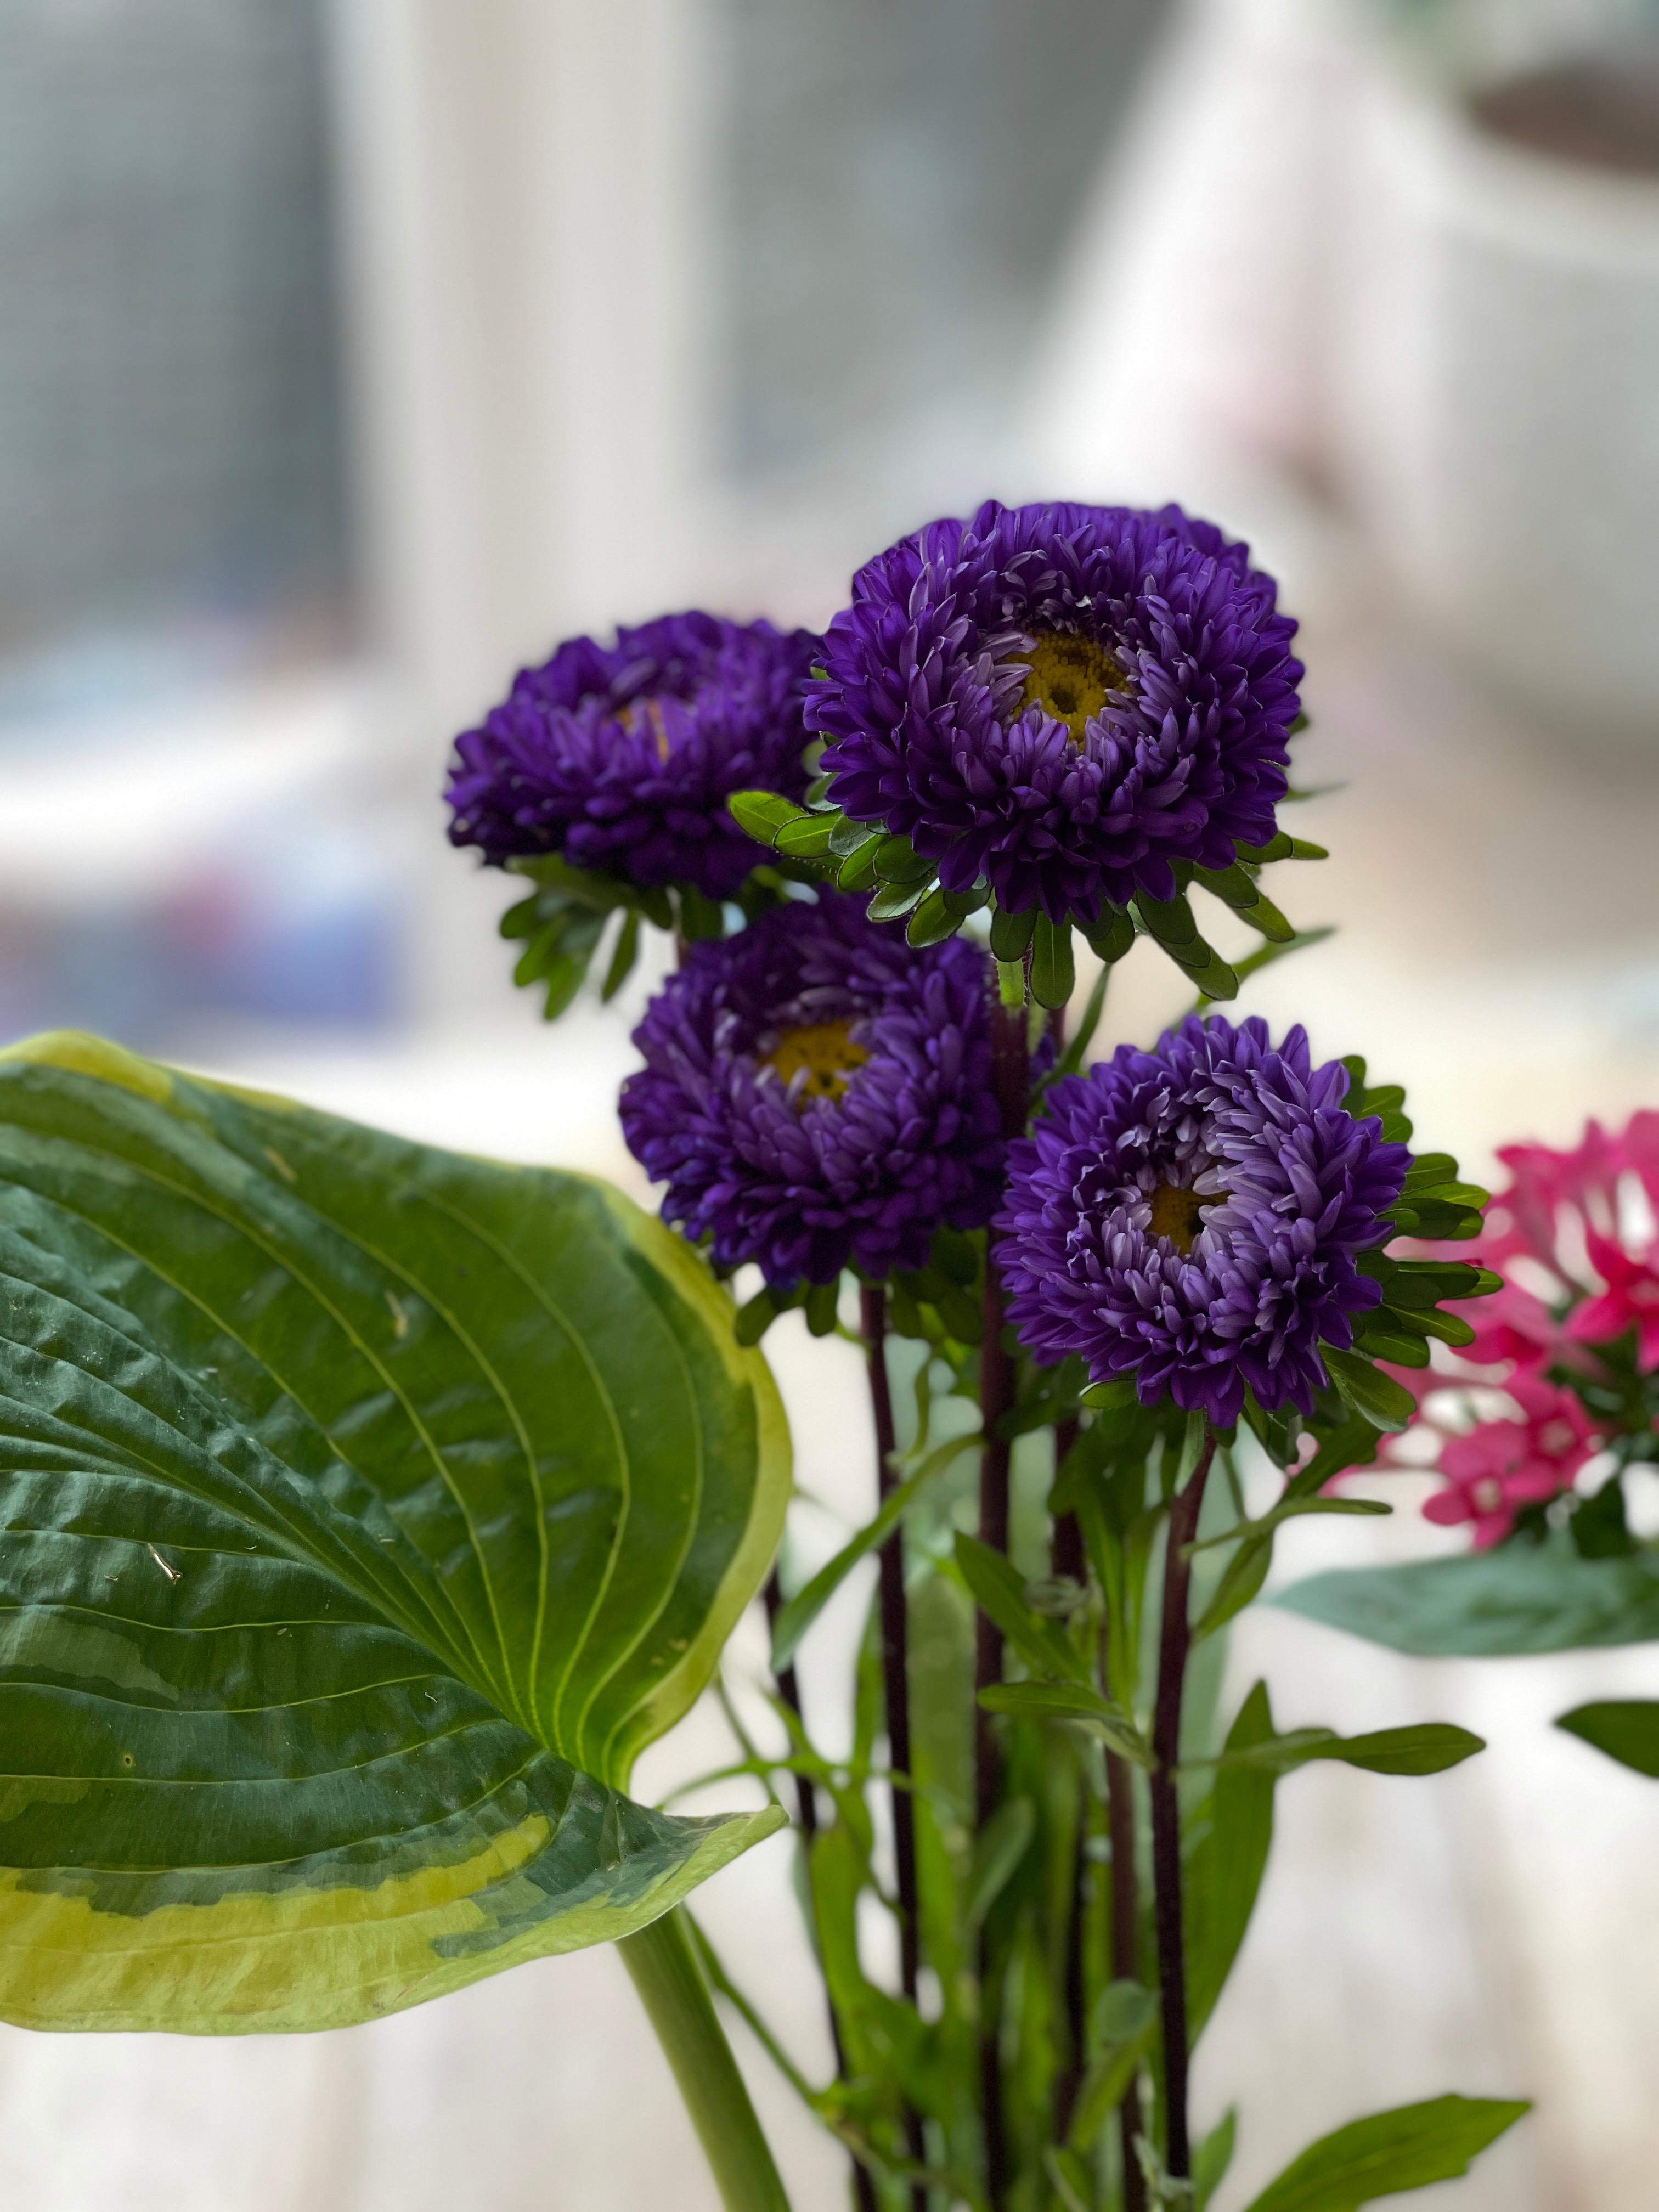 Ich liebe Blumen auf dem Esstisch. #iloveflowers